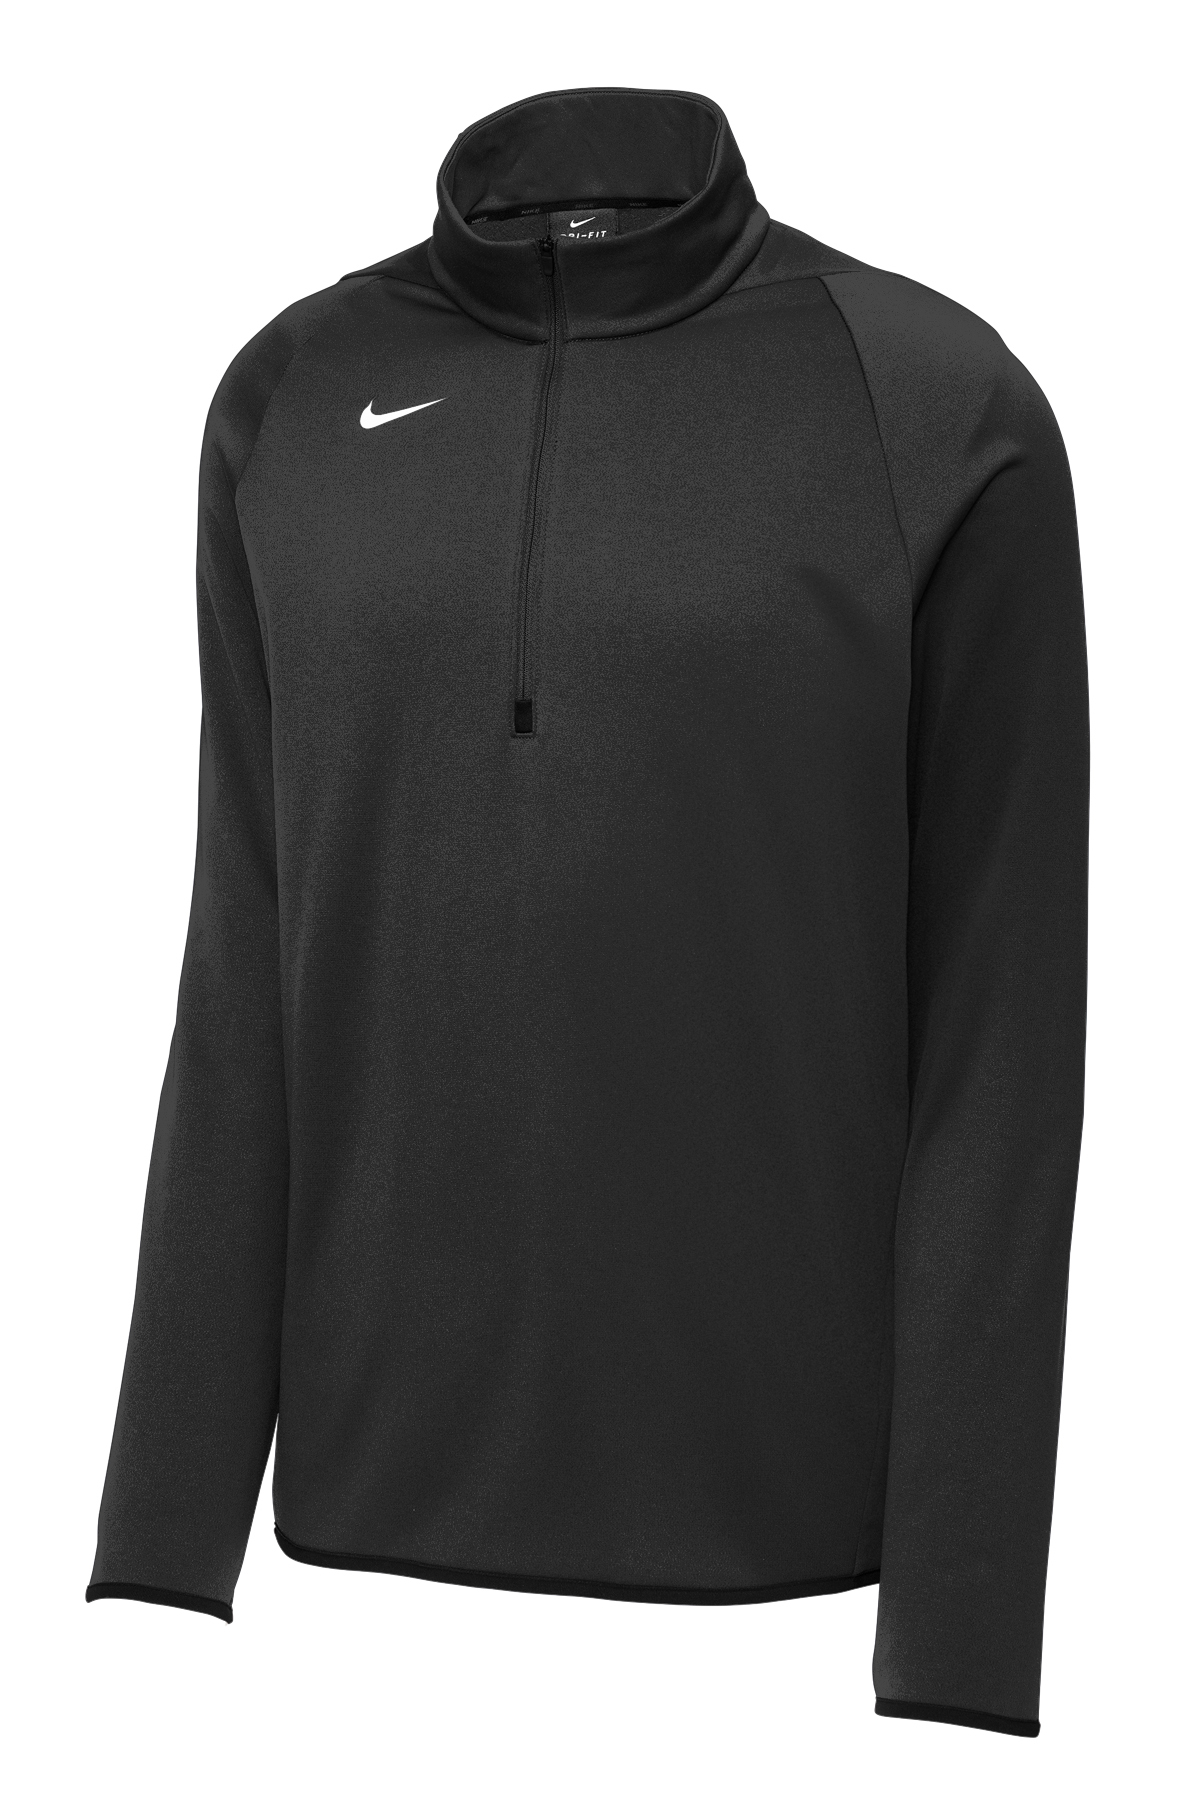 Nike Therma-FIT 1/4-Zip Fleece | Product | SanMar